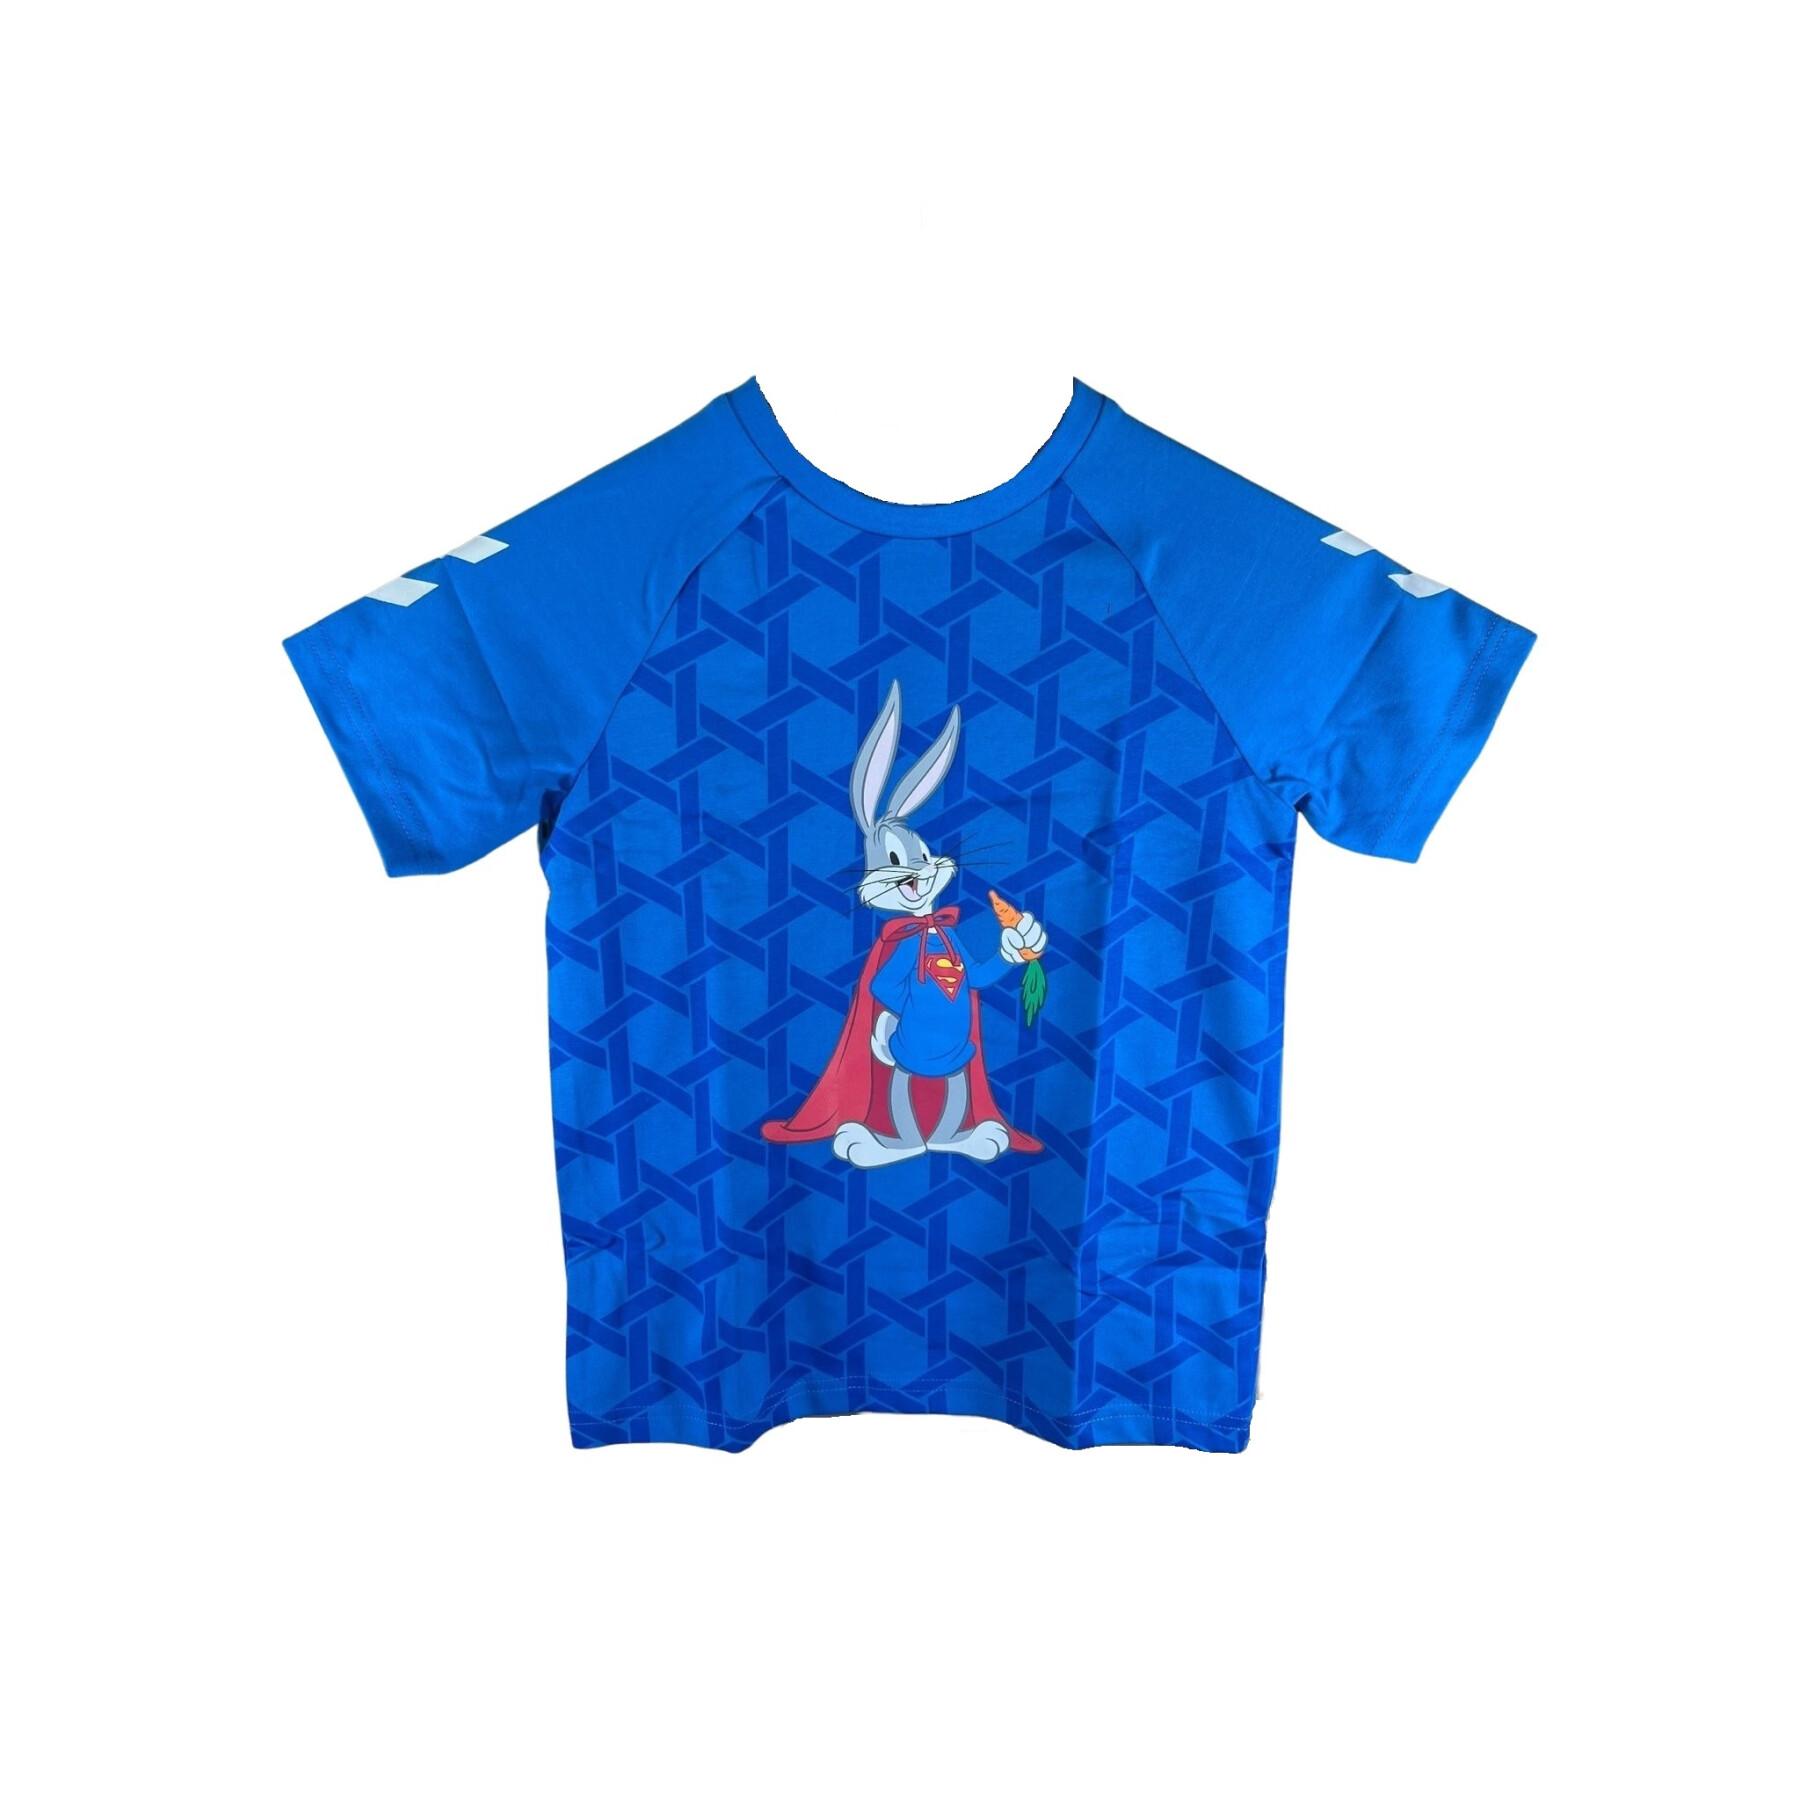 Kinder-T-shirt Hummel Bugs Bunny